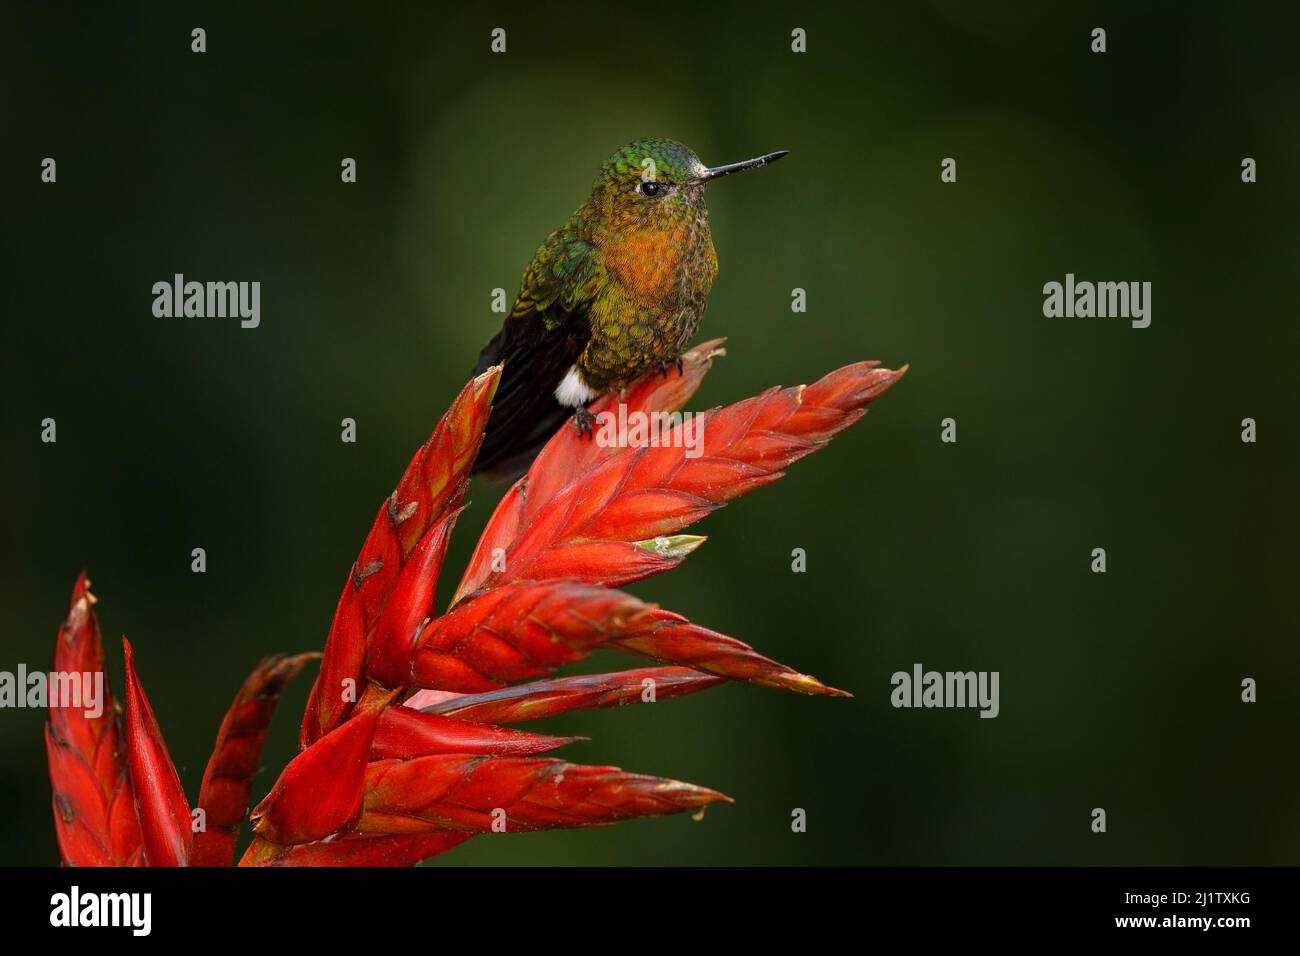 Goldbrusttaucher, Eriocnemis mosquera, Kolibri auf roter Blütenblüte im dar Tropic Forest, Yanacocha in Ecuador. Glänzender Vogel in der Natur Stockfoto